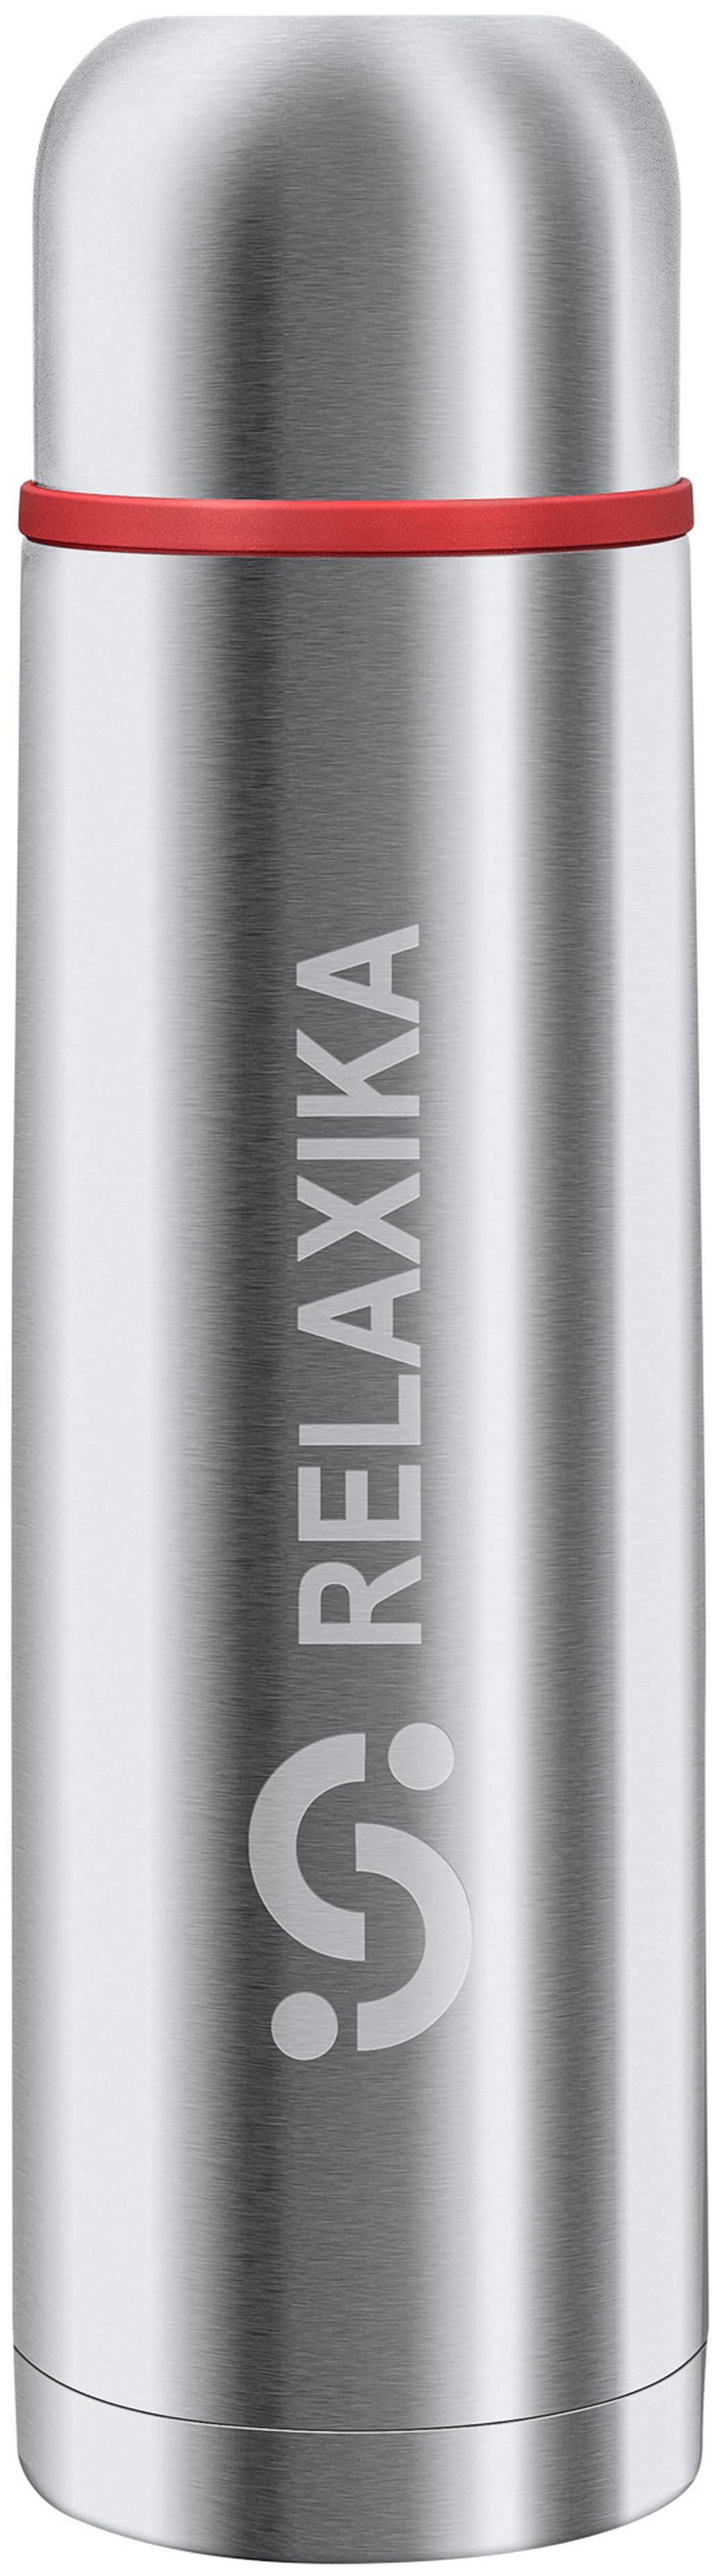 Термос Relaxika 101 (0,75 литра), стальной, шт R101.750.1 фото